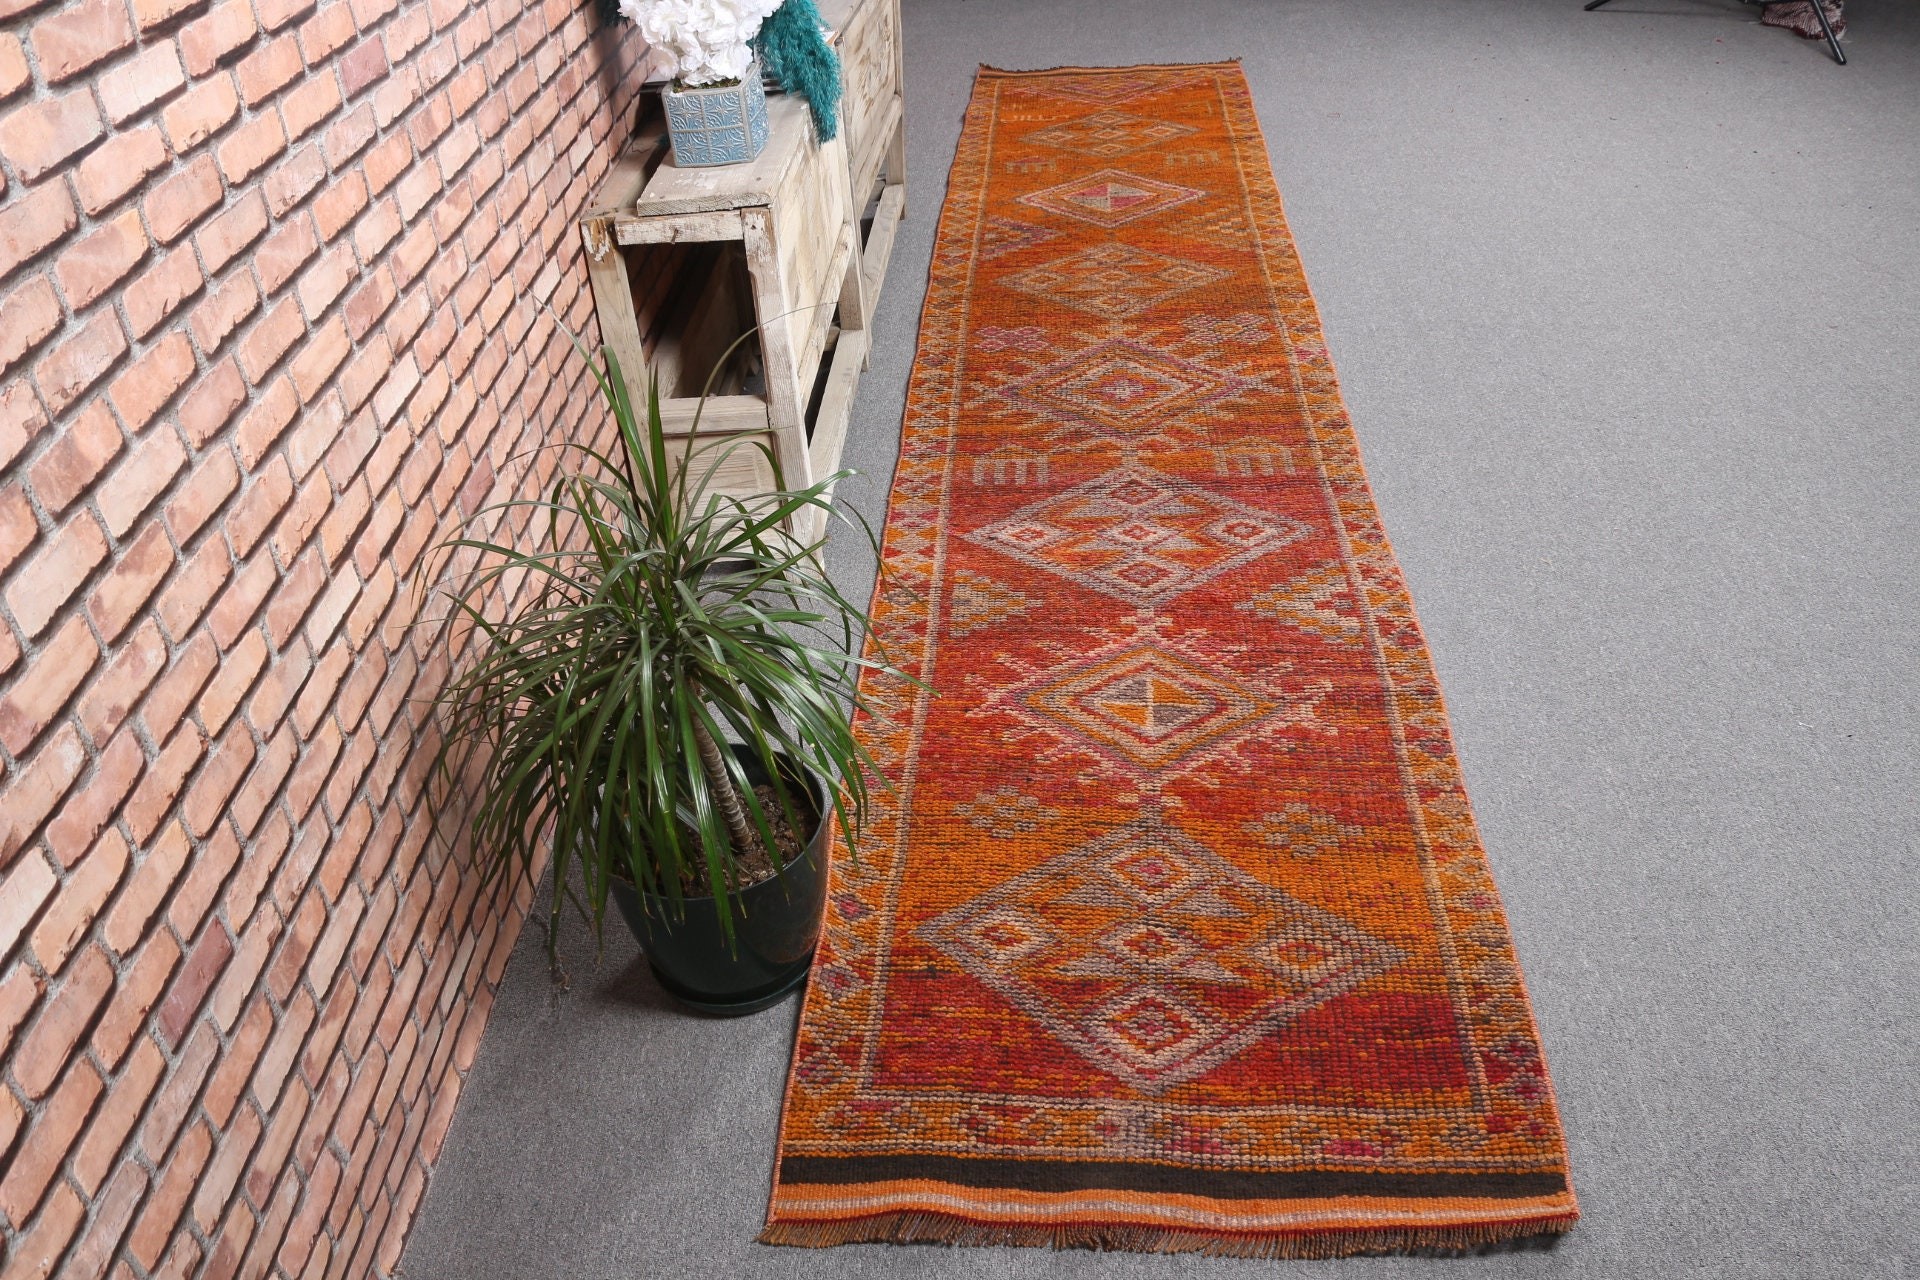 Vintage Rug, Turkish Rug, Corridor Rug, Pink Kitchen Rug, Floor Rugs, Antique Rug, Stair Rugs, Rugs for Hallway, 2.6x12.9 ft Runner Rug